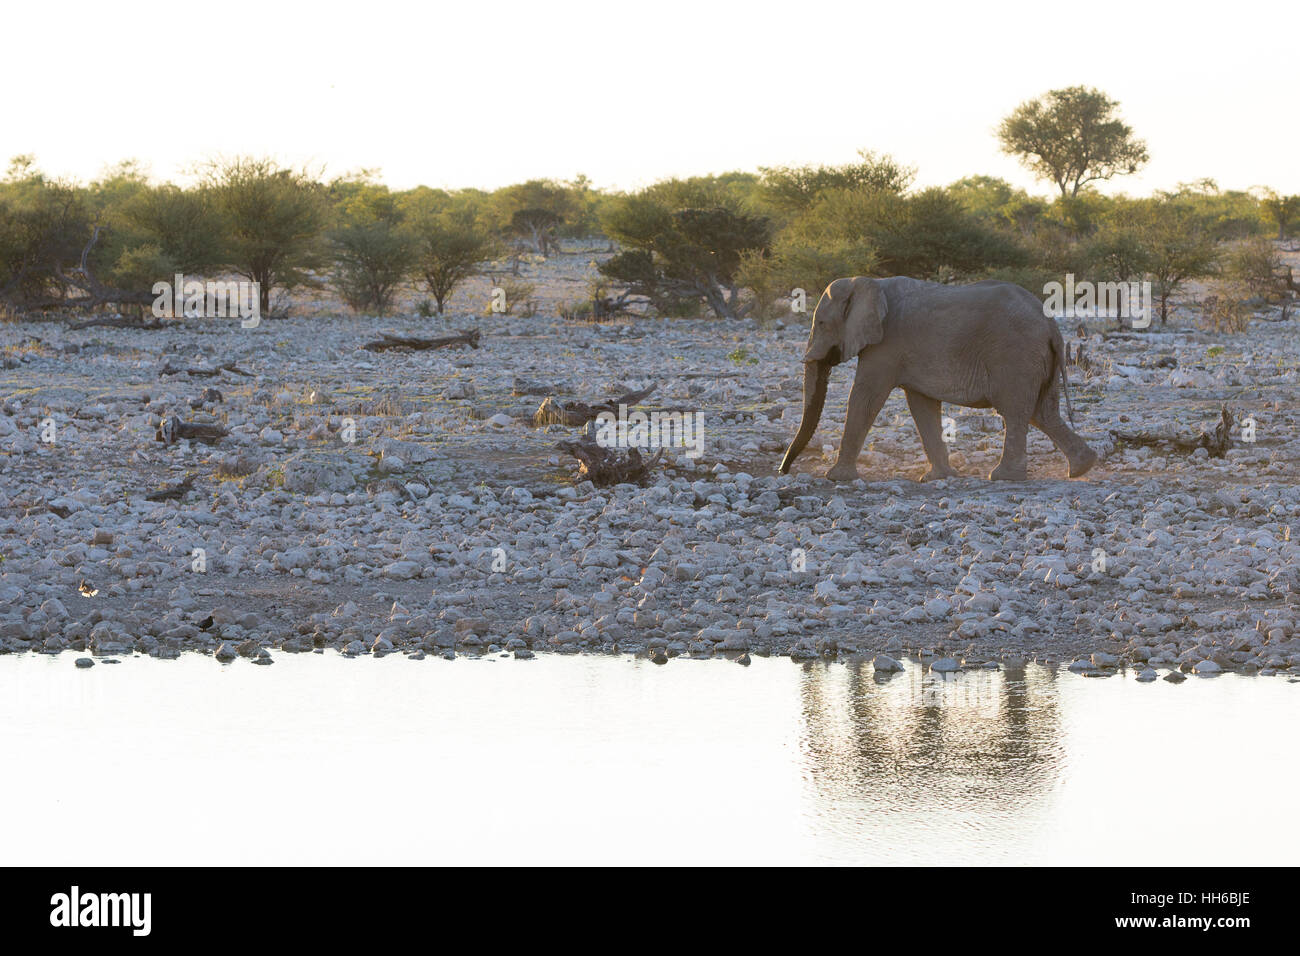 Il Parco Nazionale di Etosha, Namibia. Elefante africano al foro per l'acqua. Foto Stock